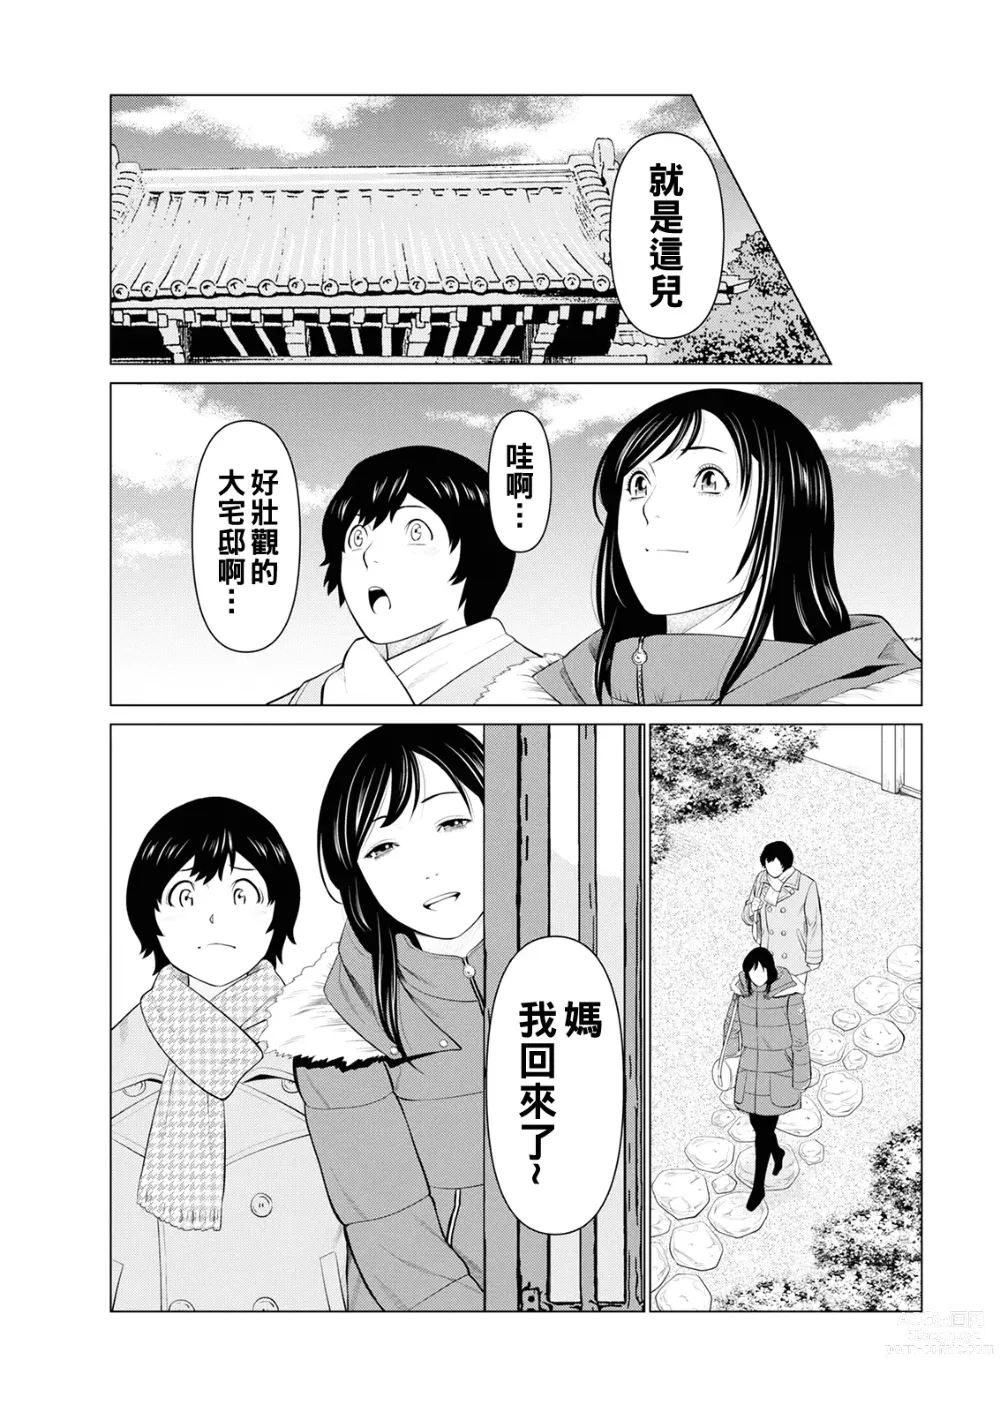 Page 9 of manga Rengoku no Sono - The Garden of Purgatory